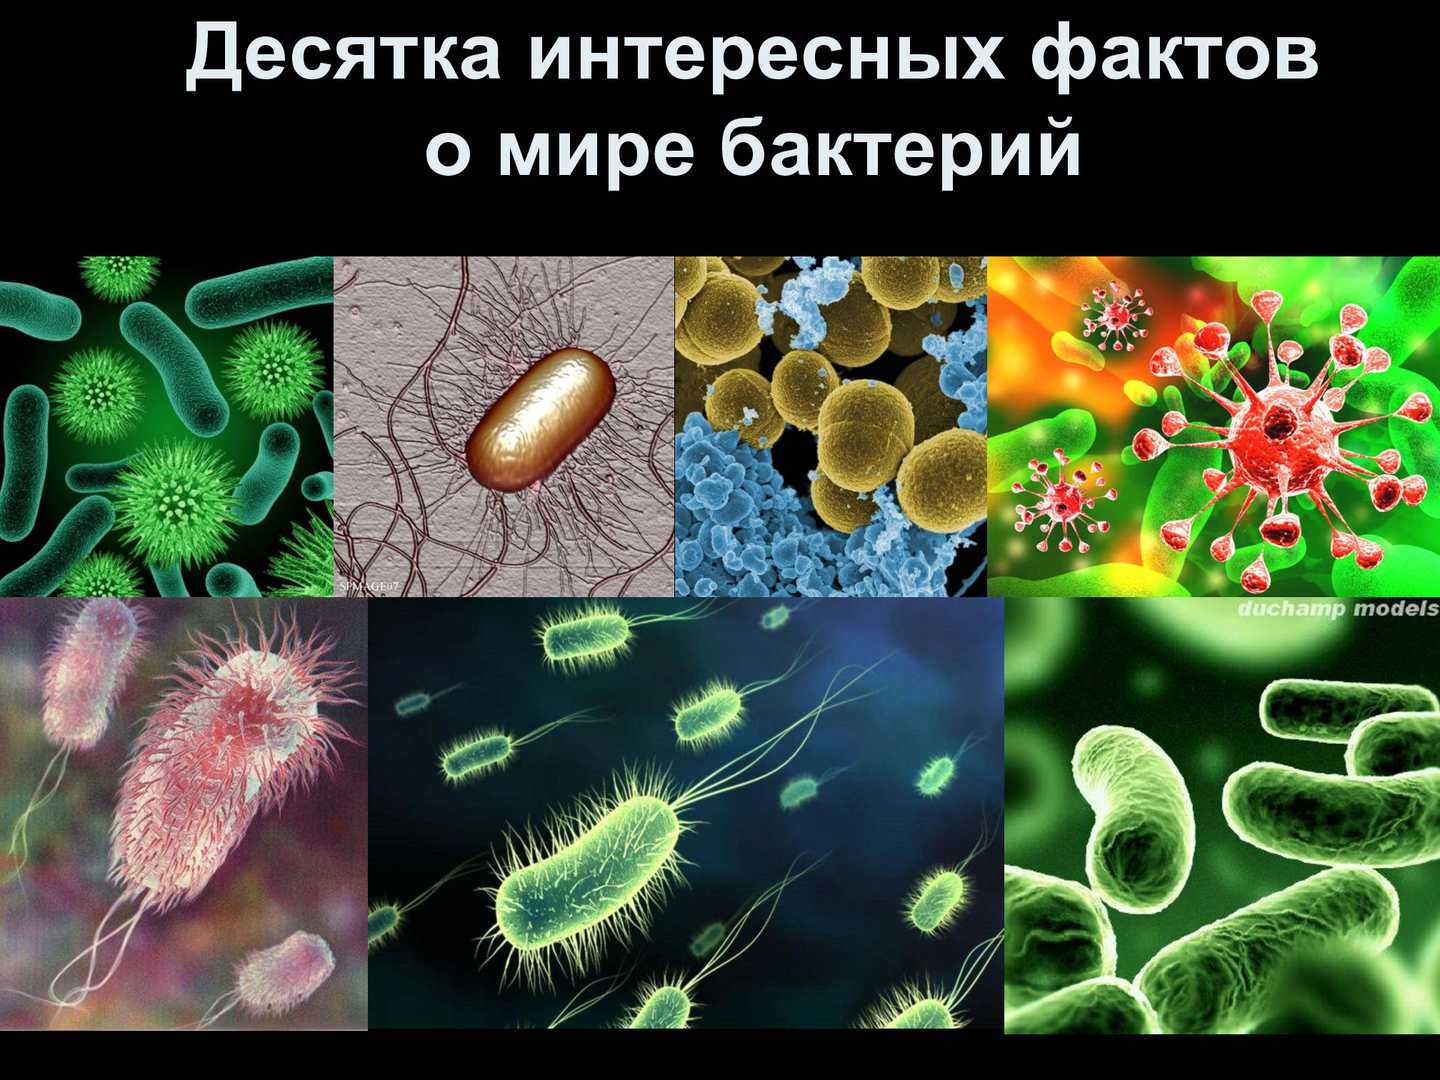 МИКРОБИОЛОГИЯ, раздел биологии, занимающийся изучением микроорганизмов, главным образом вирусов, бактерий, грибов в особенности дрожжей, одноклеточных водорослей и простейших Эта разнородная, искусственно объединенная группа микроскопически малых организм